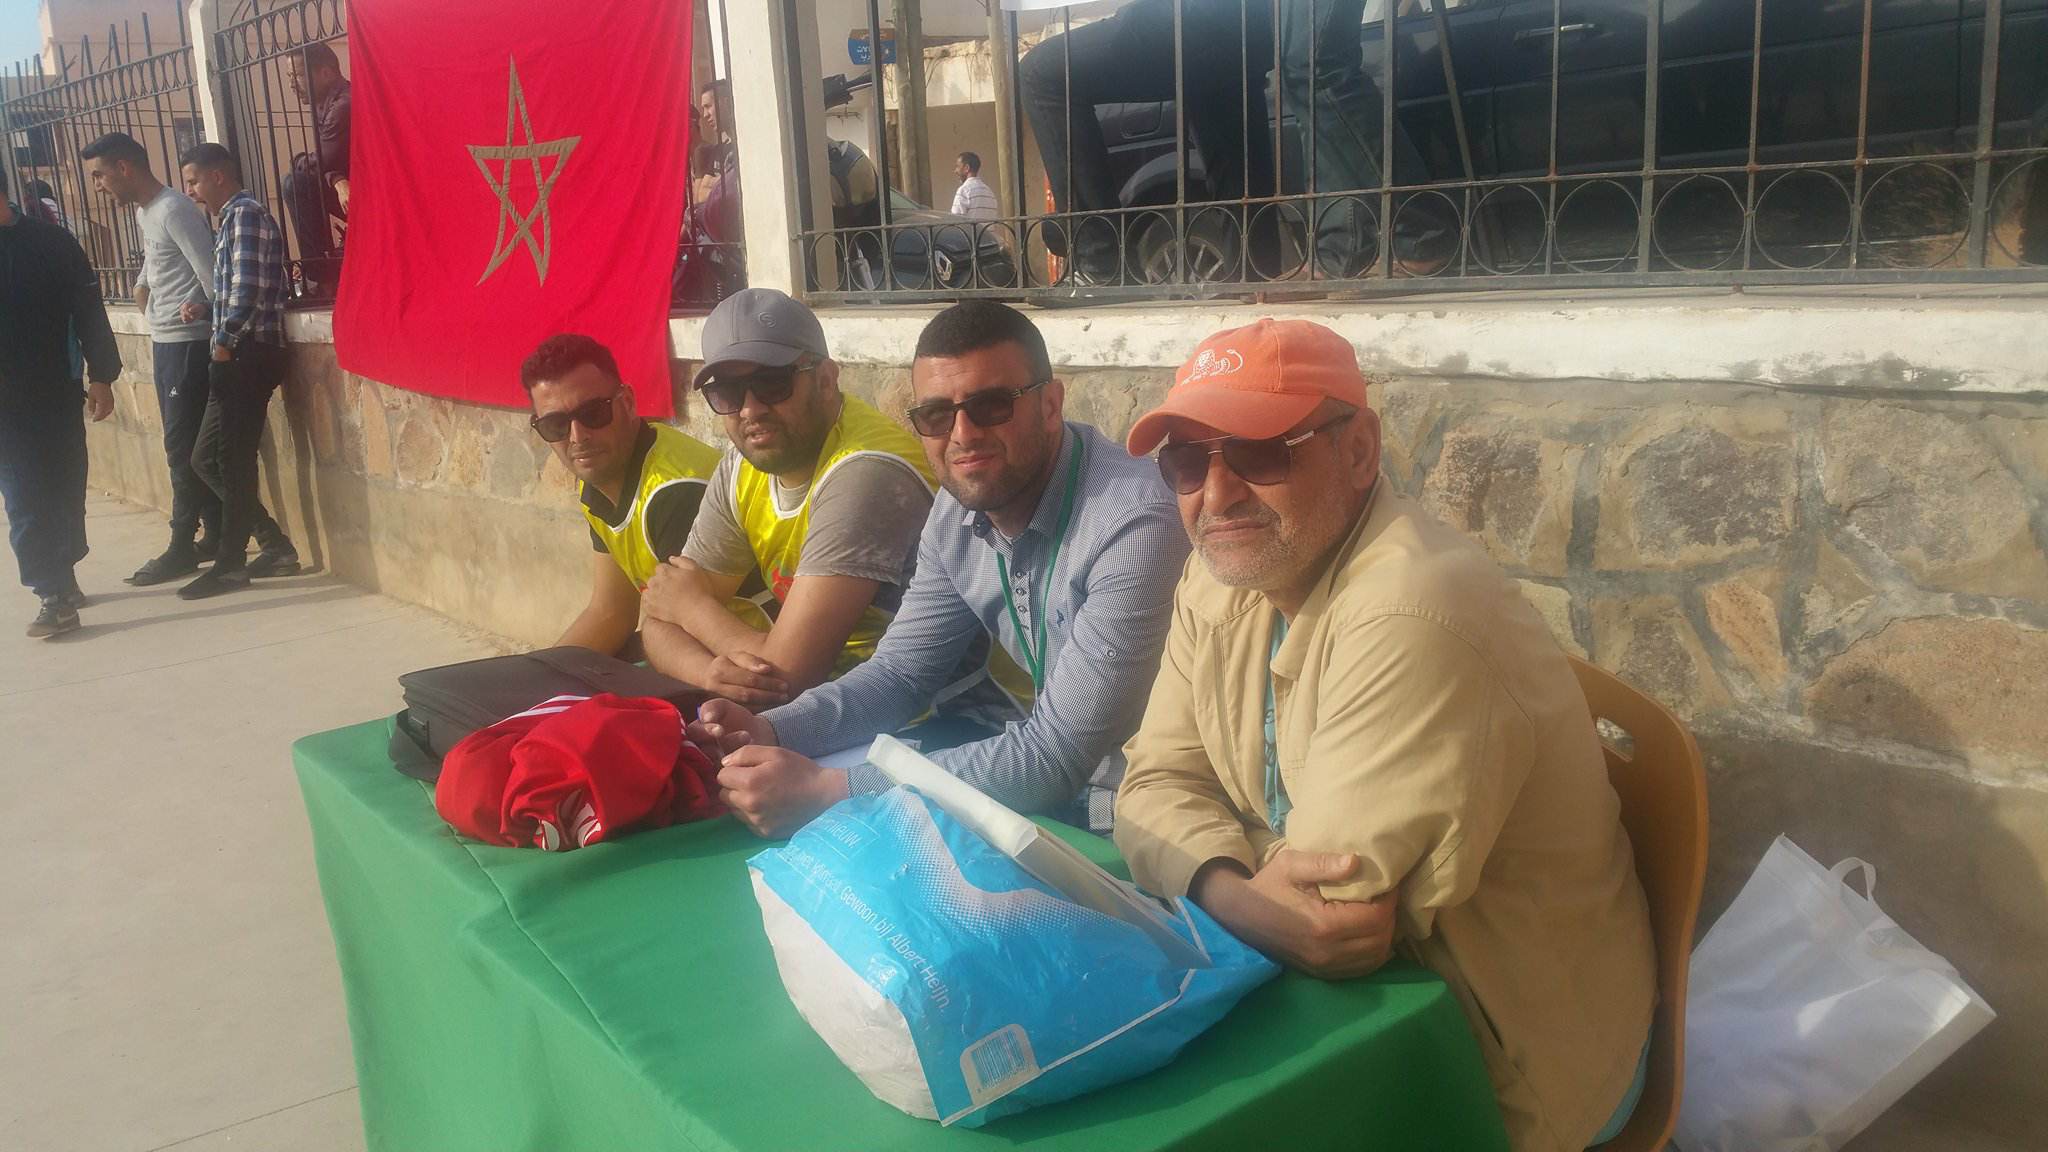 جمعويو "تزغين" ينظمون أكبر دوري رمضاني في كرة القدم المصغرة بحضور ممثلي السلطة والجماعة